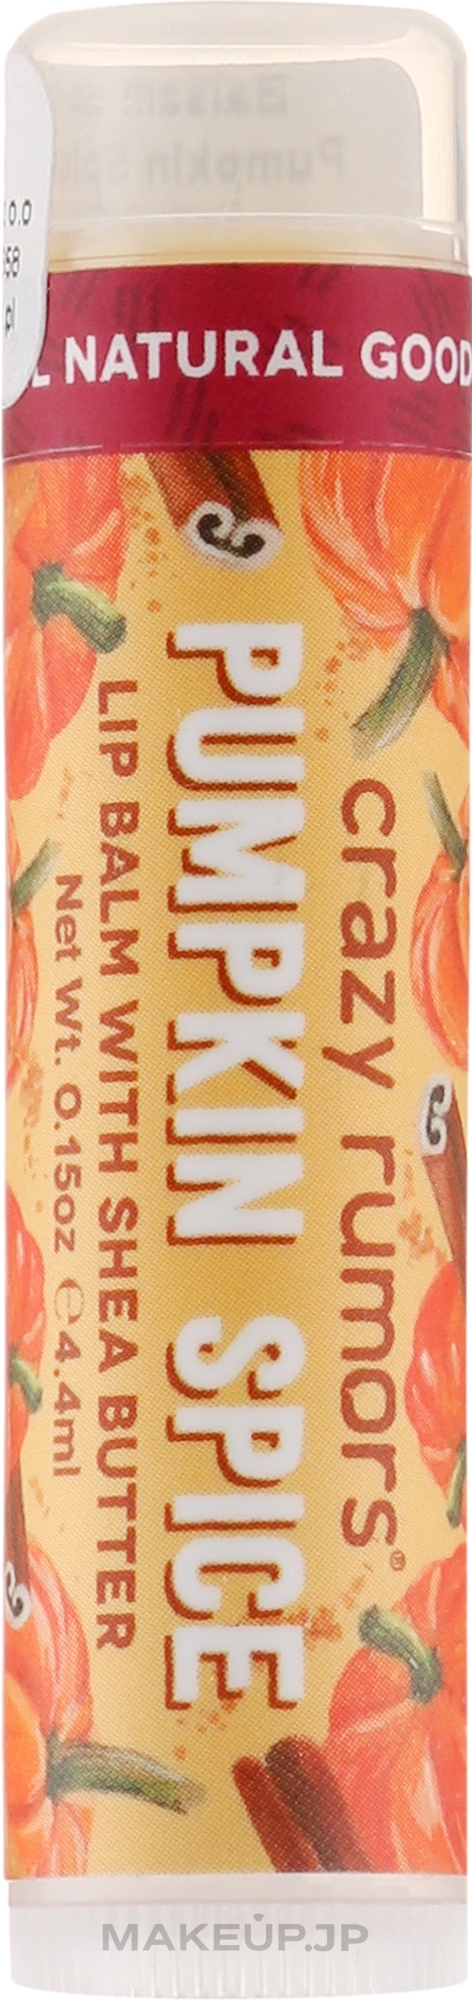 Lip Balm - Crazy Rumors Pumpkin Spice Lip Balm — photo 4.25 g